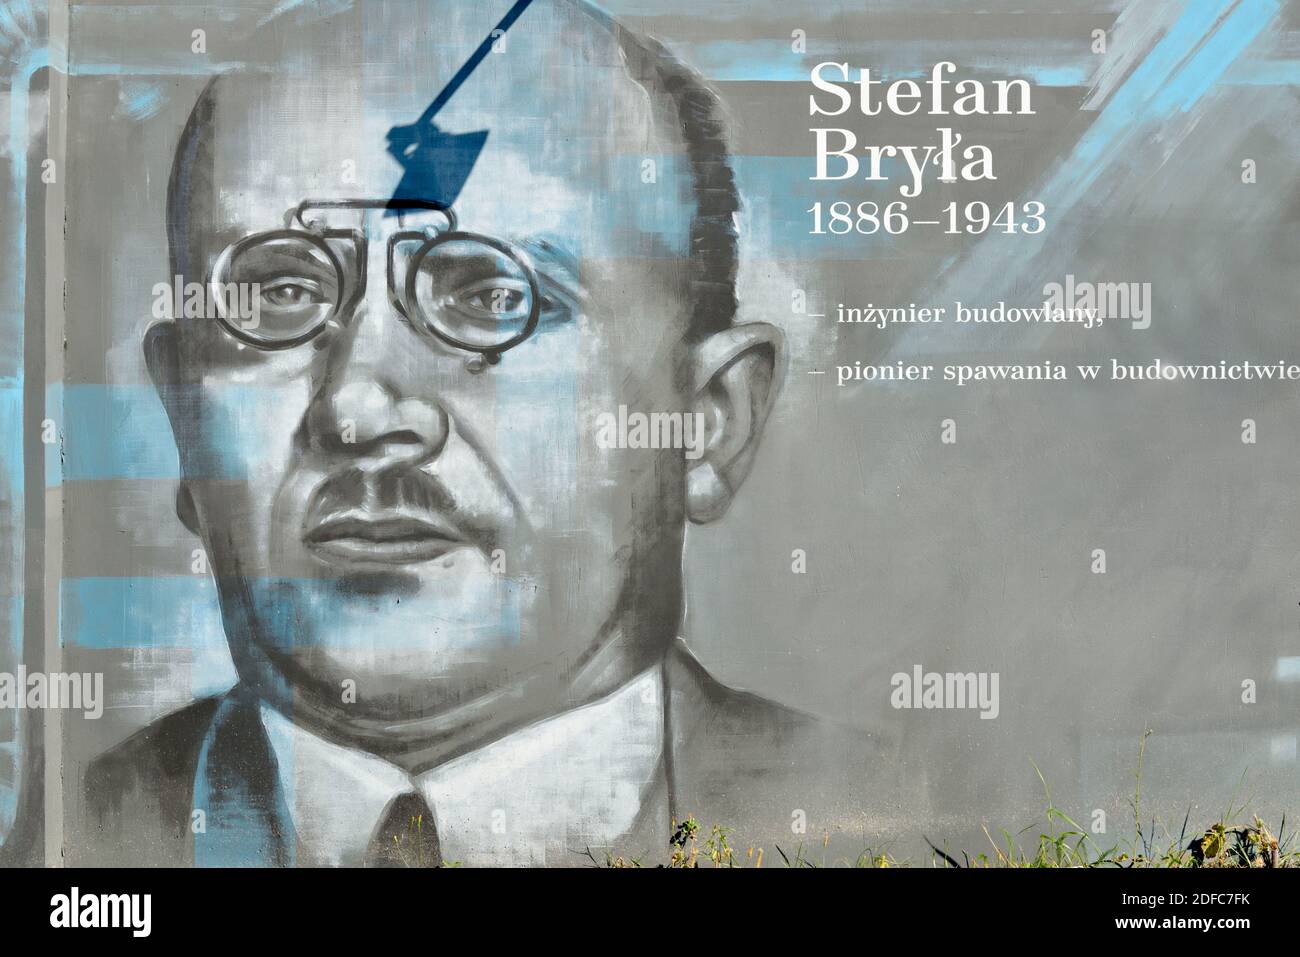 Poland, West Pomerania, Szczecin, Zygmunta Chmielewskiego Street, famous Polish personality murals, here Stefan Bry&#x142;a Stock Photo